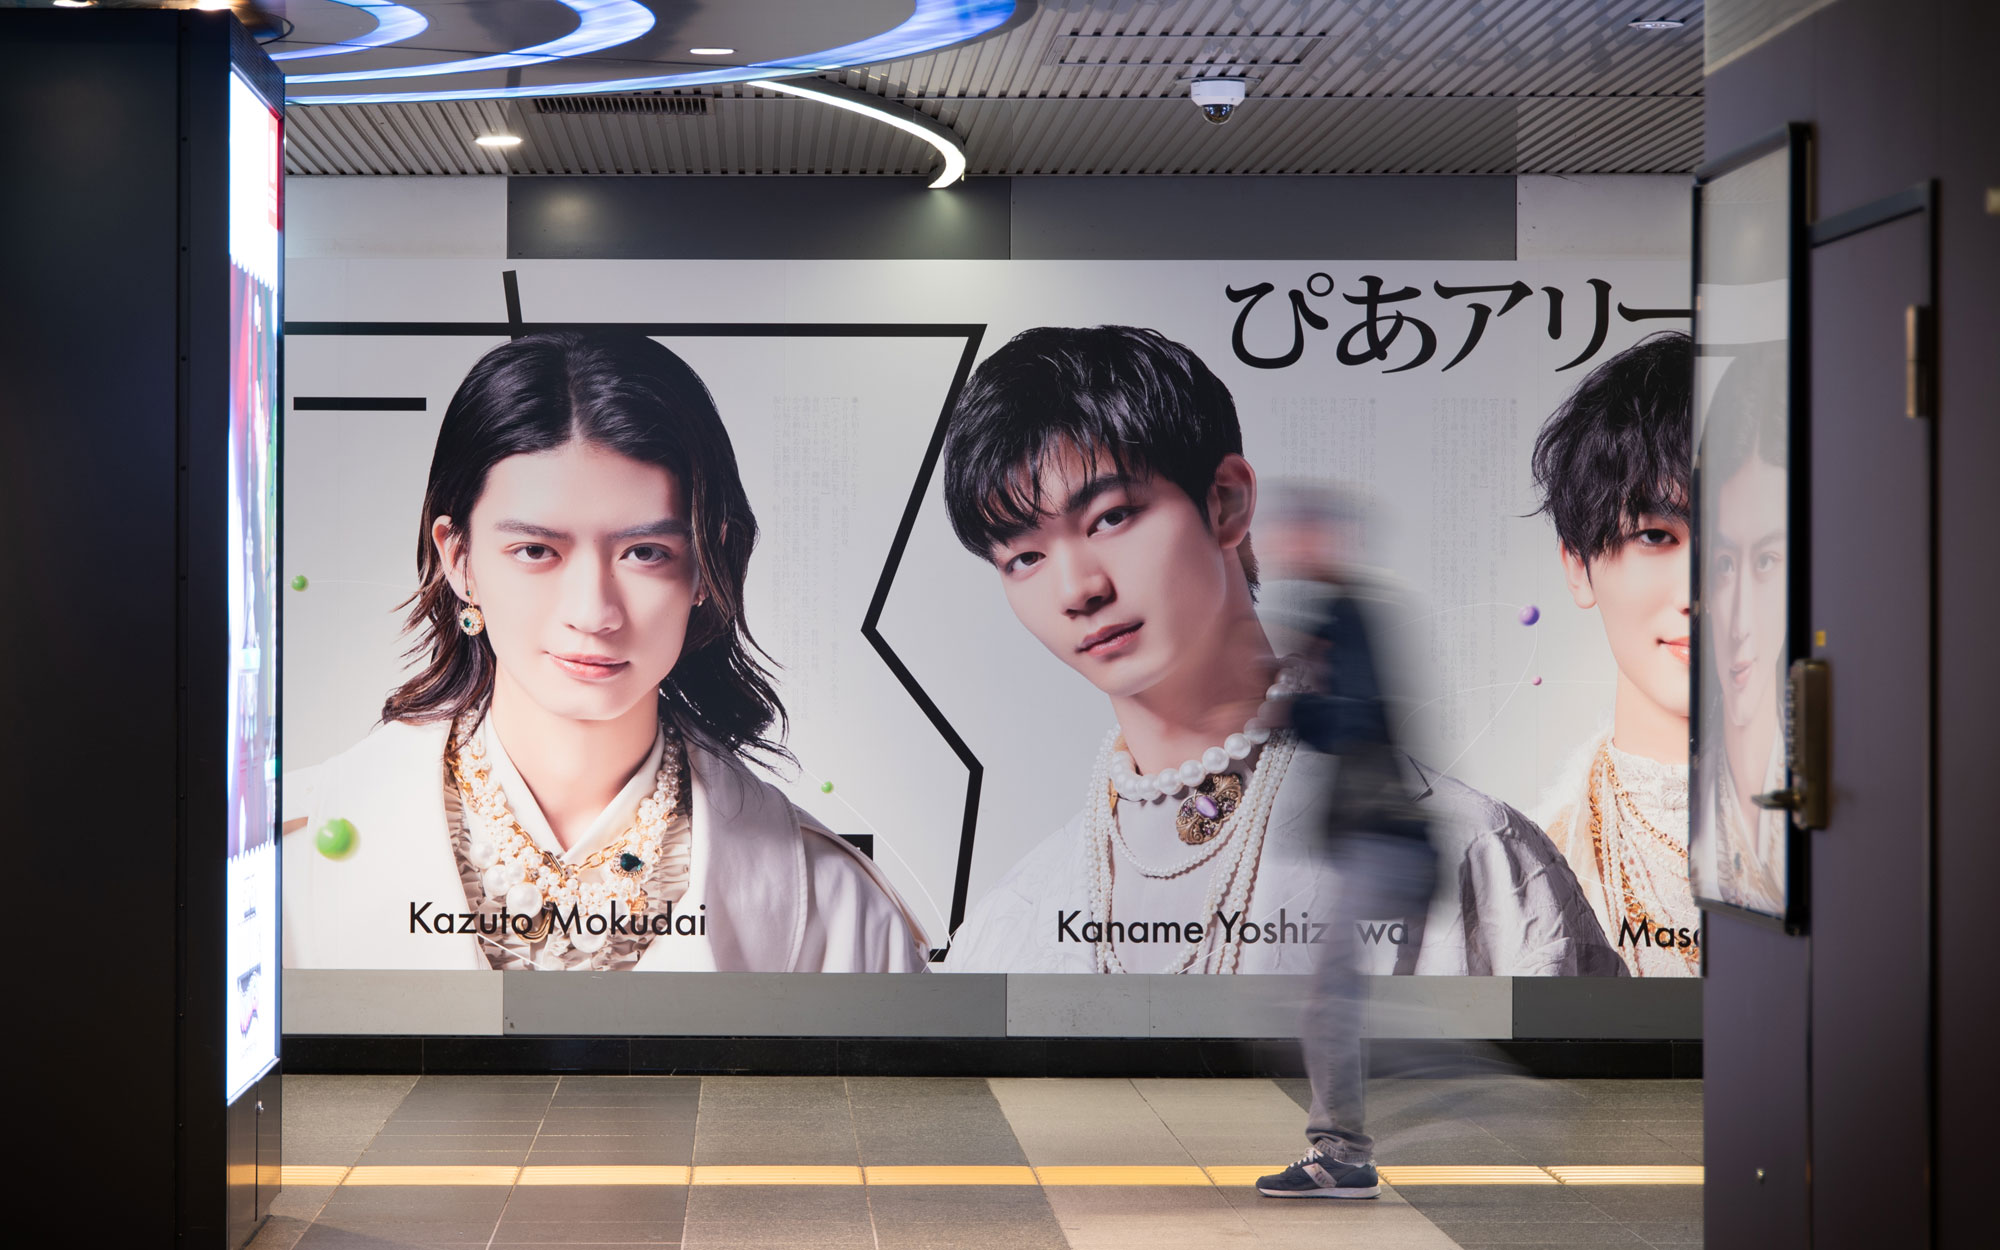  原因は自分にある。さま渋谷駅広告デザイン